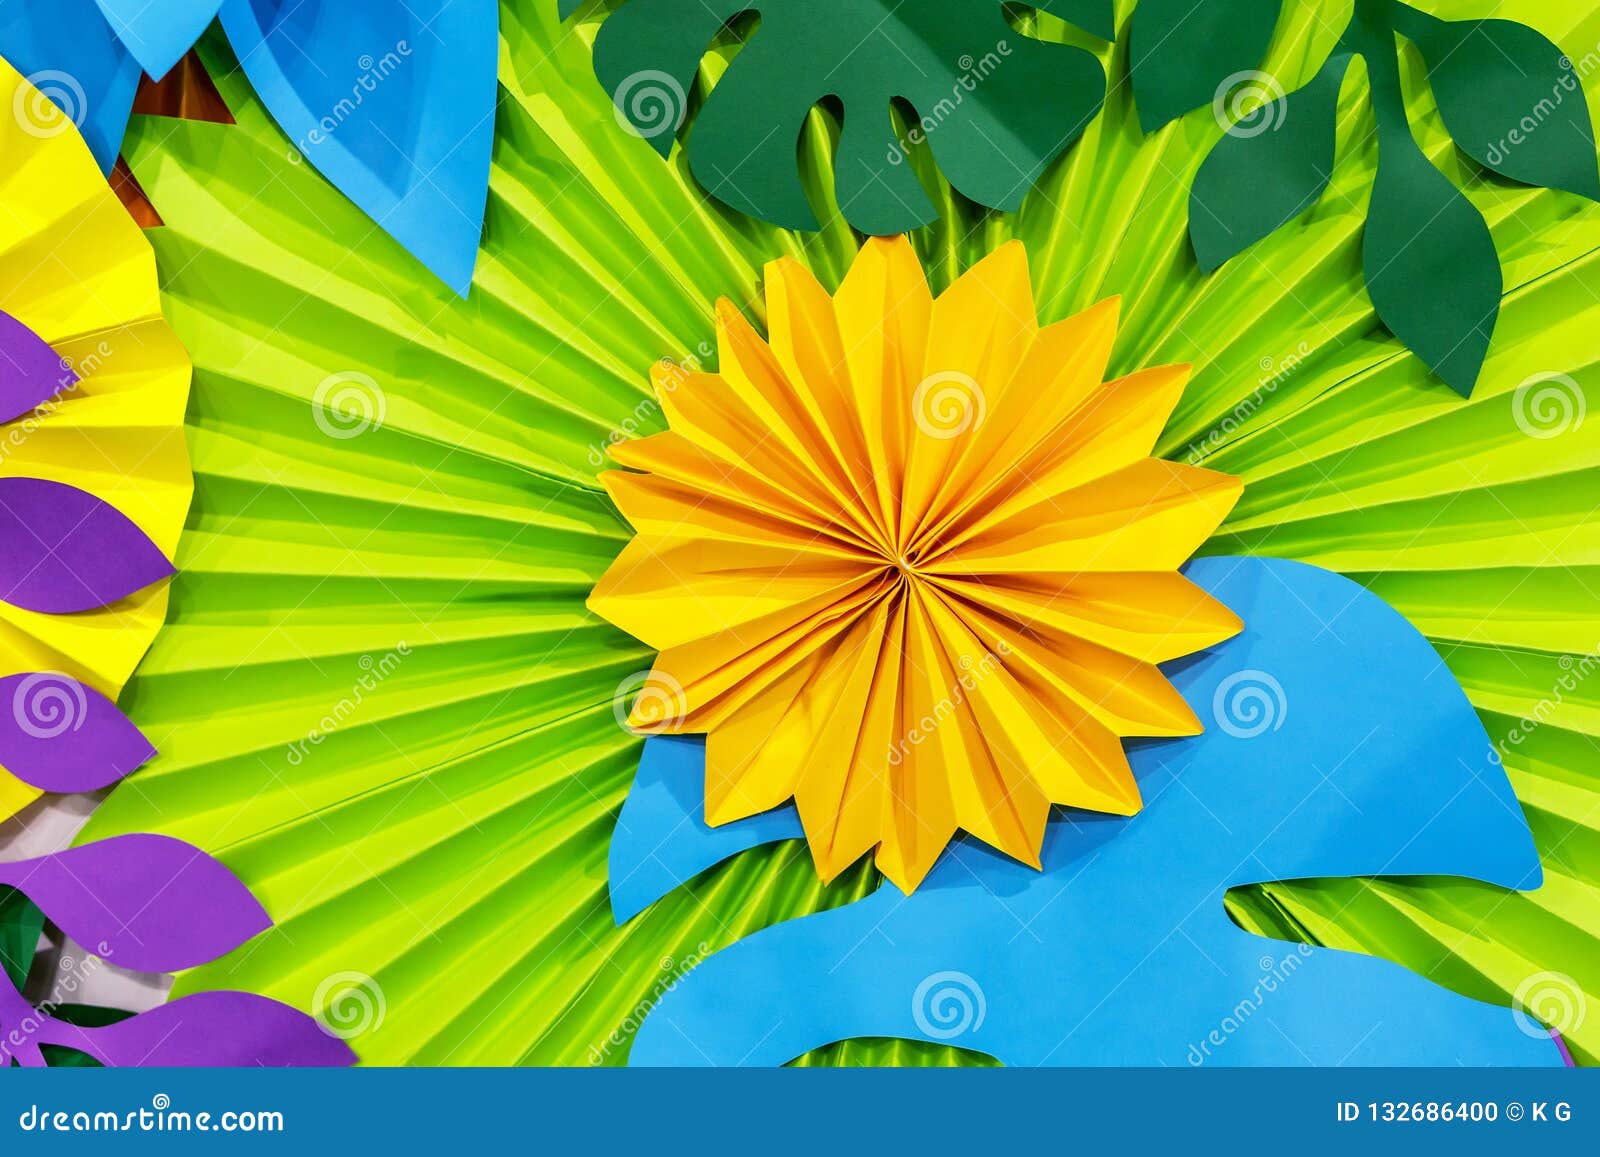 Fondo Tropical Colorido De La Flor De Papel Flores Multicoloras Y Hojas  Hechas Del Papel Foto de archivo - Imagen de extracto, selva: 132686400